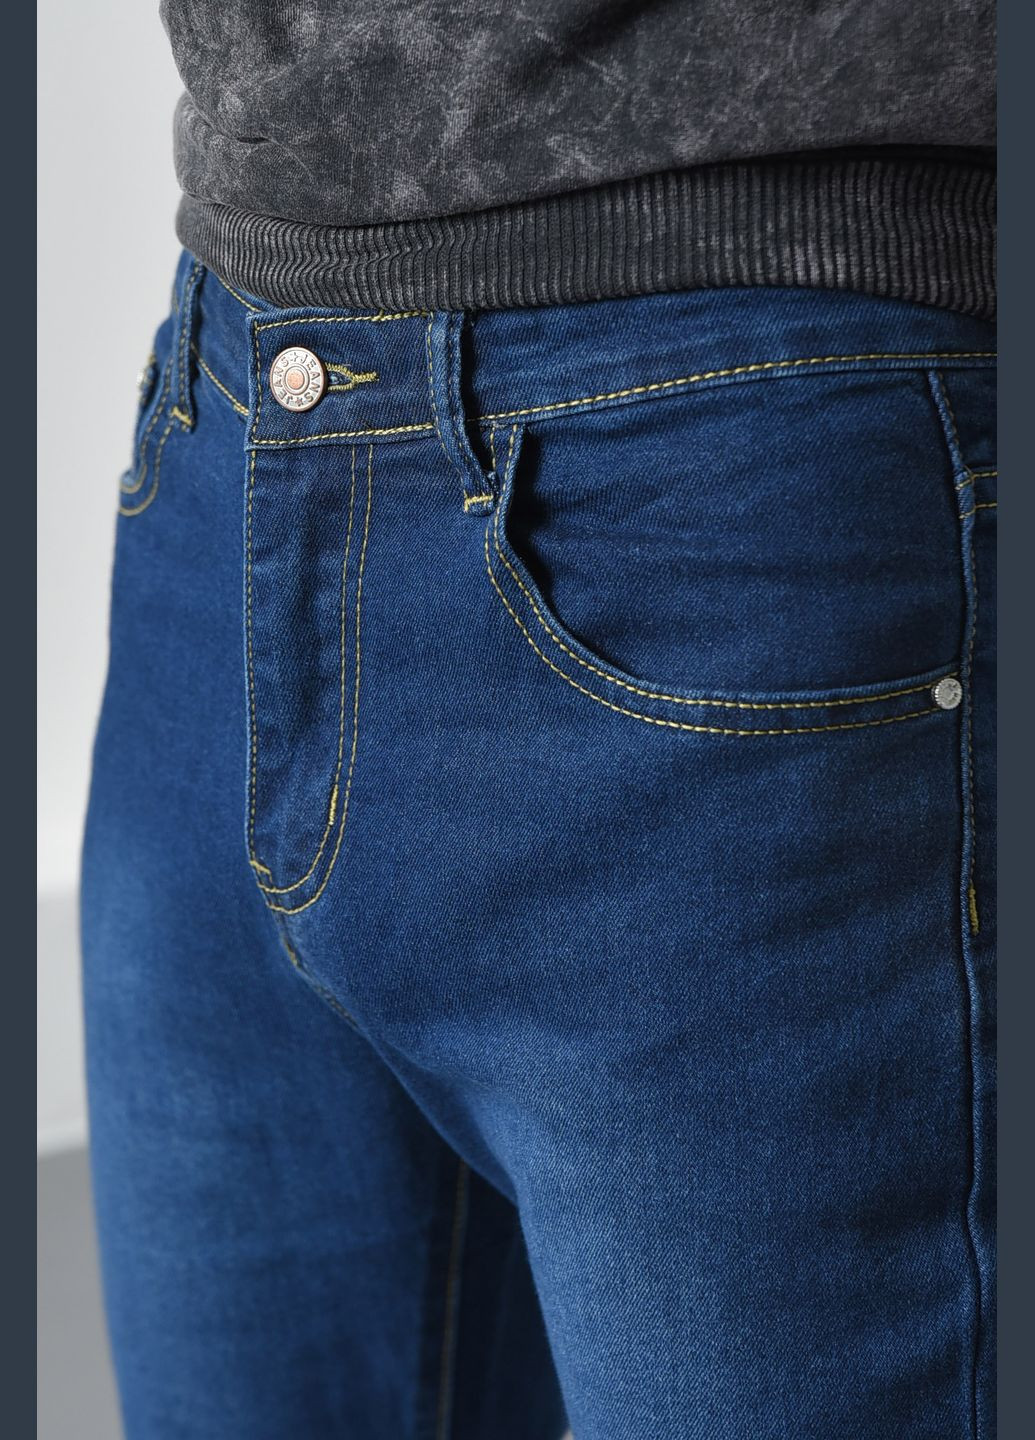 Темно-синие демисезонные джинсы мужские темно-синие Let's Shop